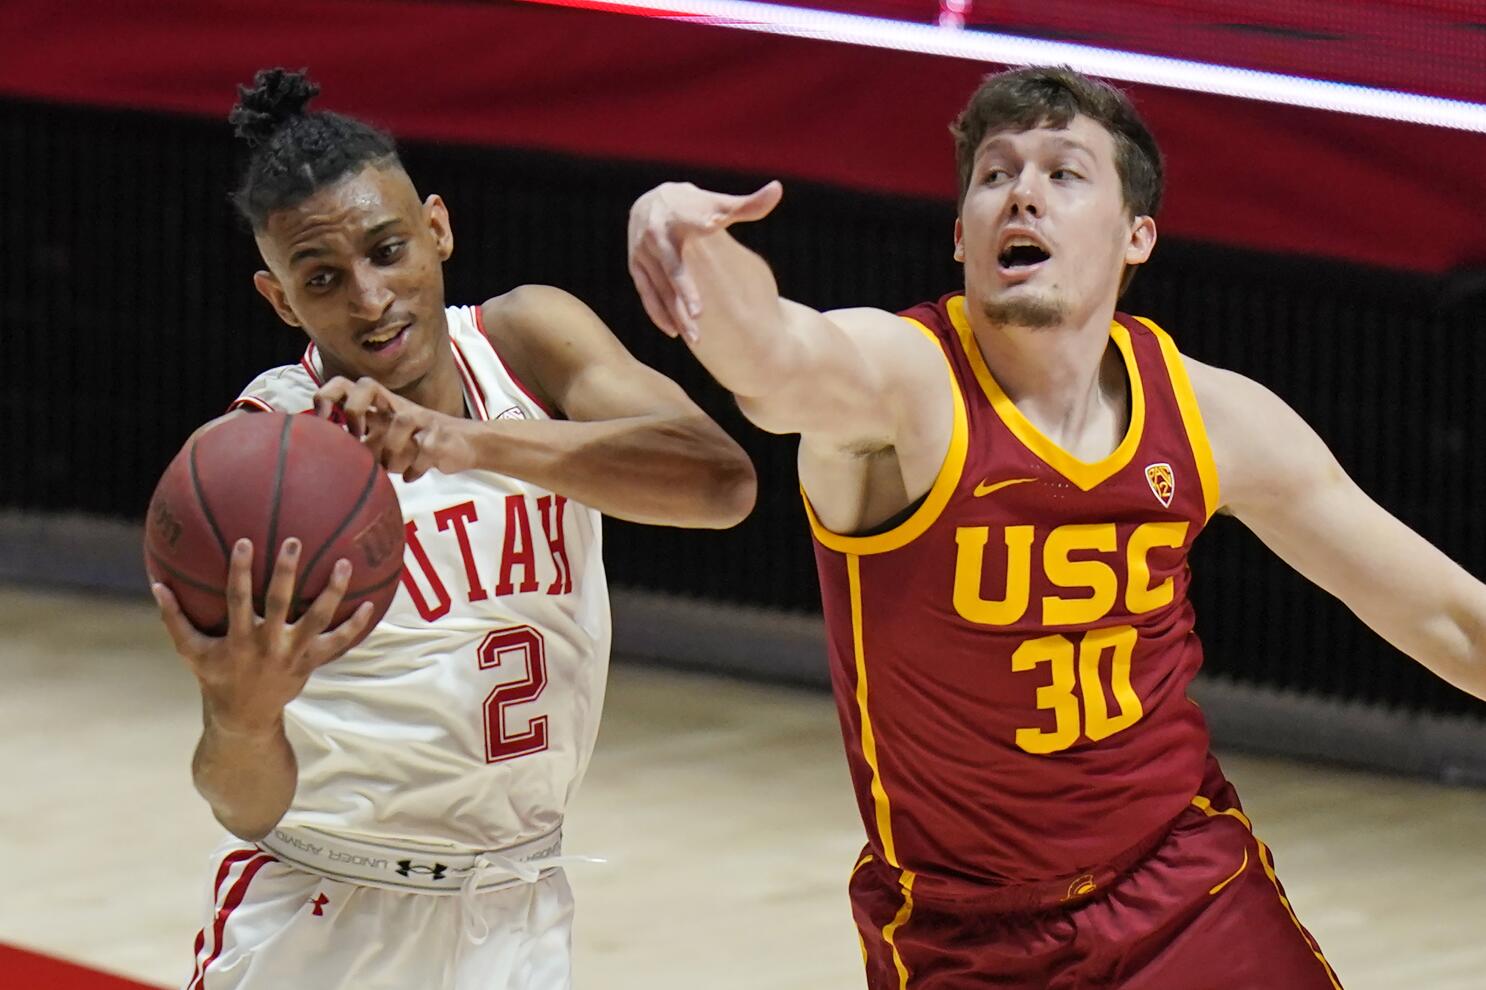 Utah Men's Basketball vs. USC Trojans Men's Basketball, University